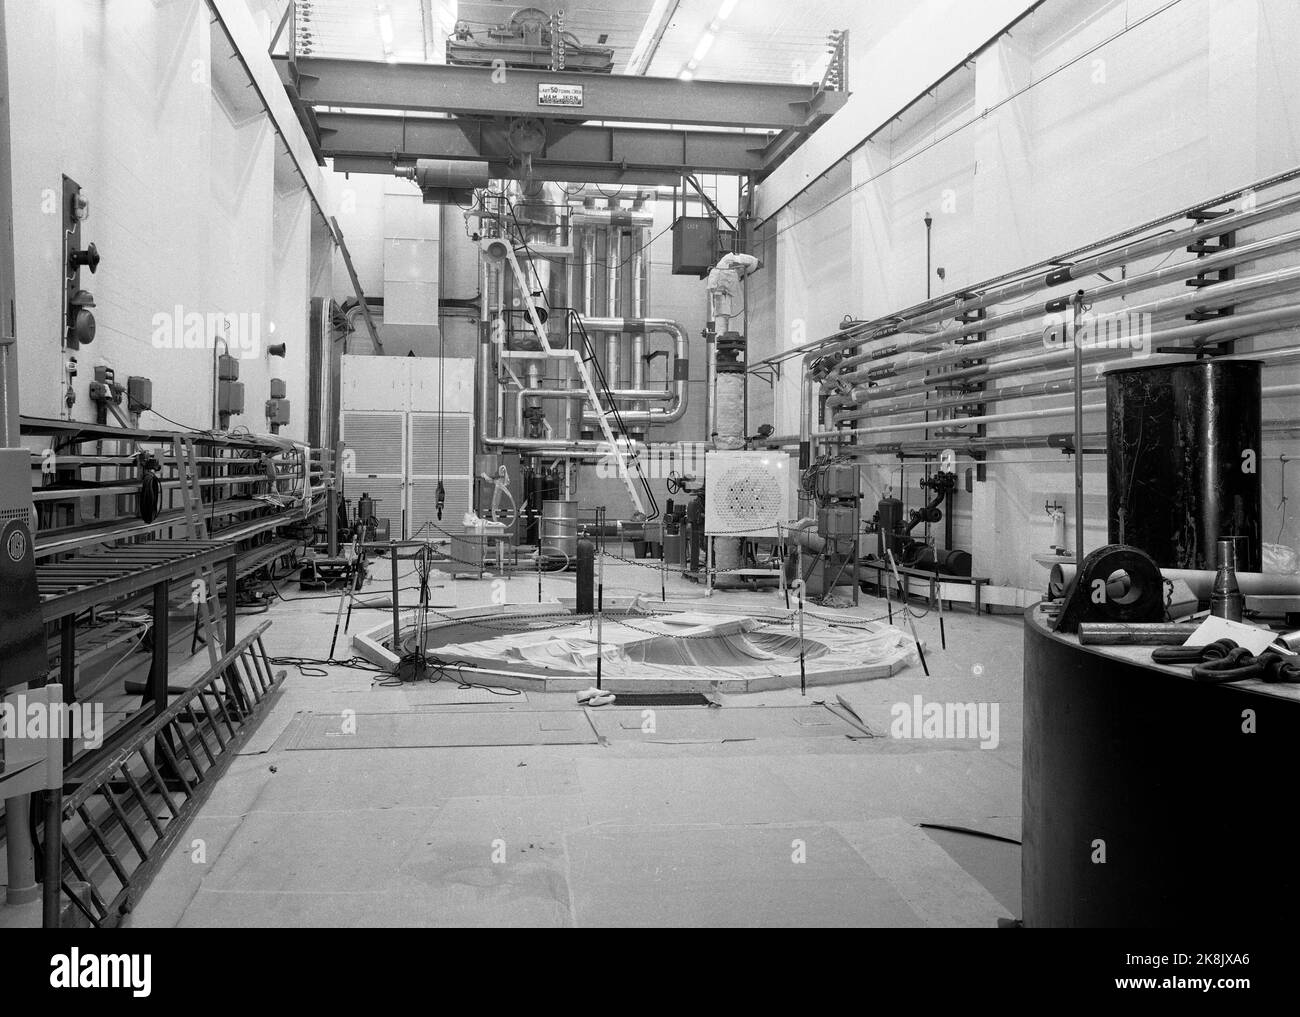 Halden Oktober 1959 der Atomreaktor in Halden, bereit zum Einsatz. Der Reaktor in Halden wurde in den Jahren 1955 bis 1958 vom damaligen Institut für Atomenergie (heute Institut für Energietechnik, IFE) gebaut. Der Reaktor wurde als Versuchsreaktor gebaut, mit ausreichender Wirkung, um auch als Prototyp eines Dampfherstellers für die Industrie eingesetzt zu werden. Die Kühlung des Reaktors und die Moderation von Neutronen erfolgt mit 14 Tonnen schwerem Wasser. Diese Art von Reaktoren wird als Kochwasserreaktor bezeichnet. Hier das Innere der Reaktorhalle. Foto: Knoblauch / NTB Stockfoto